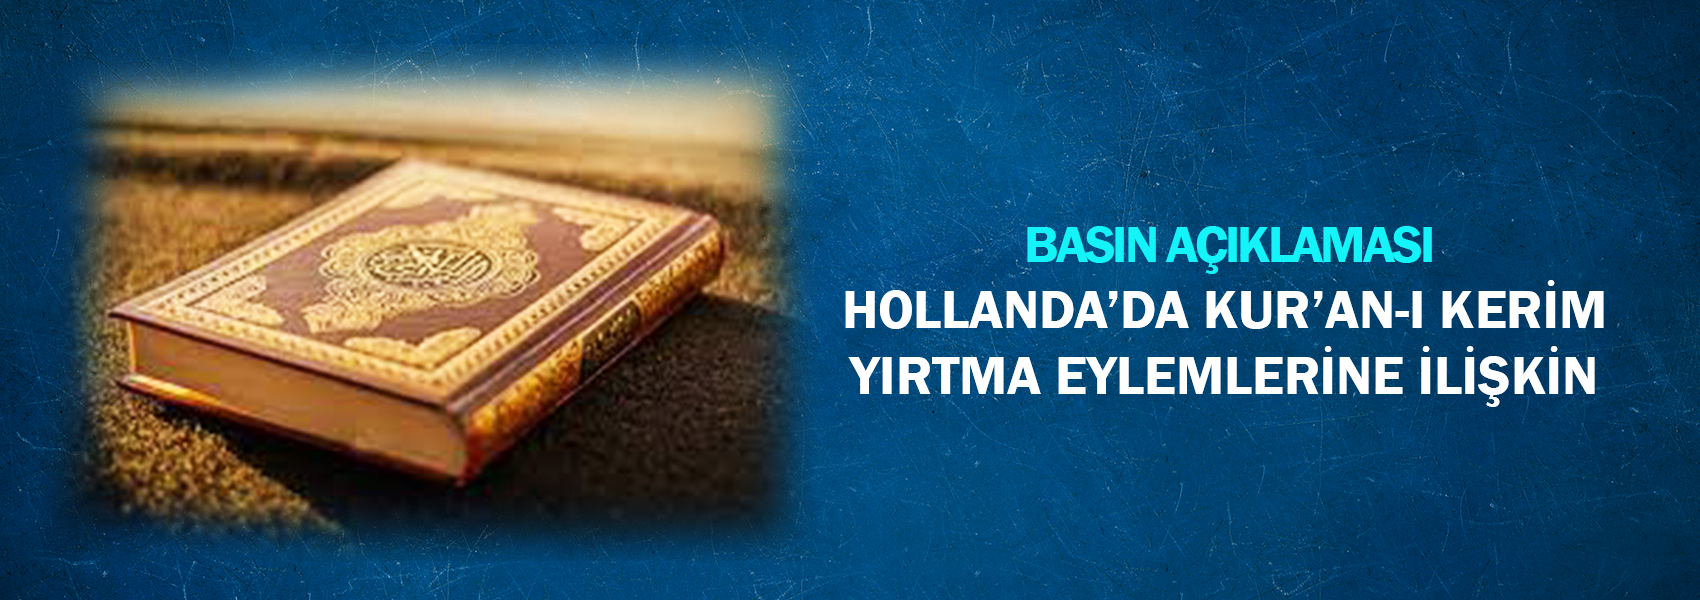 Hollanda'da Kur'an-ı Kerim Yırtma Eylemlerine İlişkin Basın Açıklaması